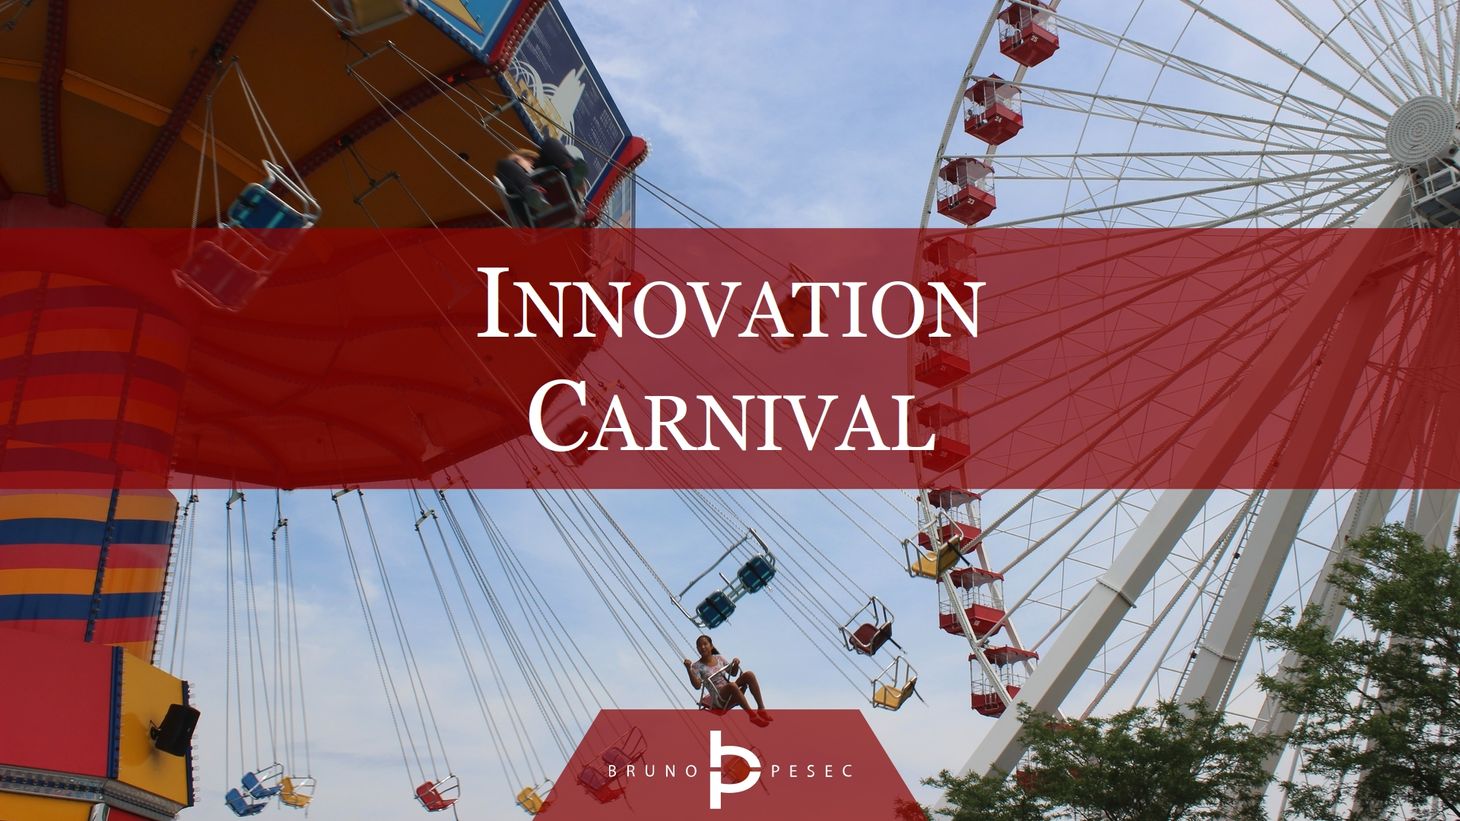 Innovation carnival